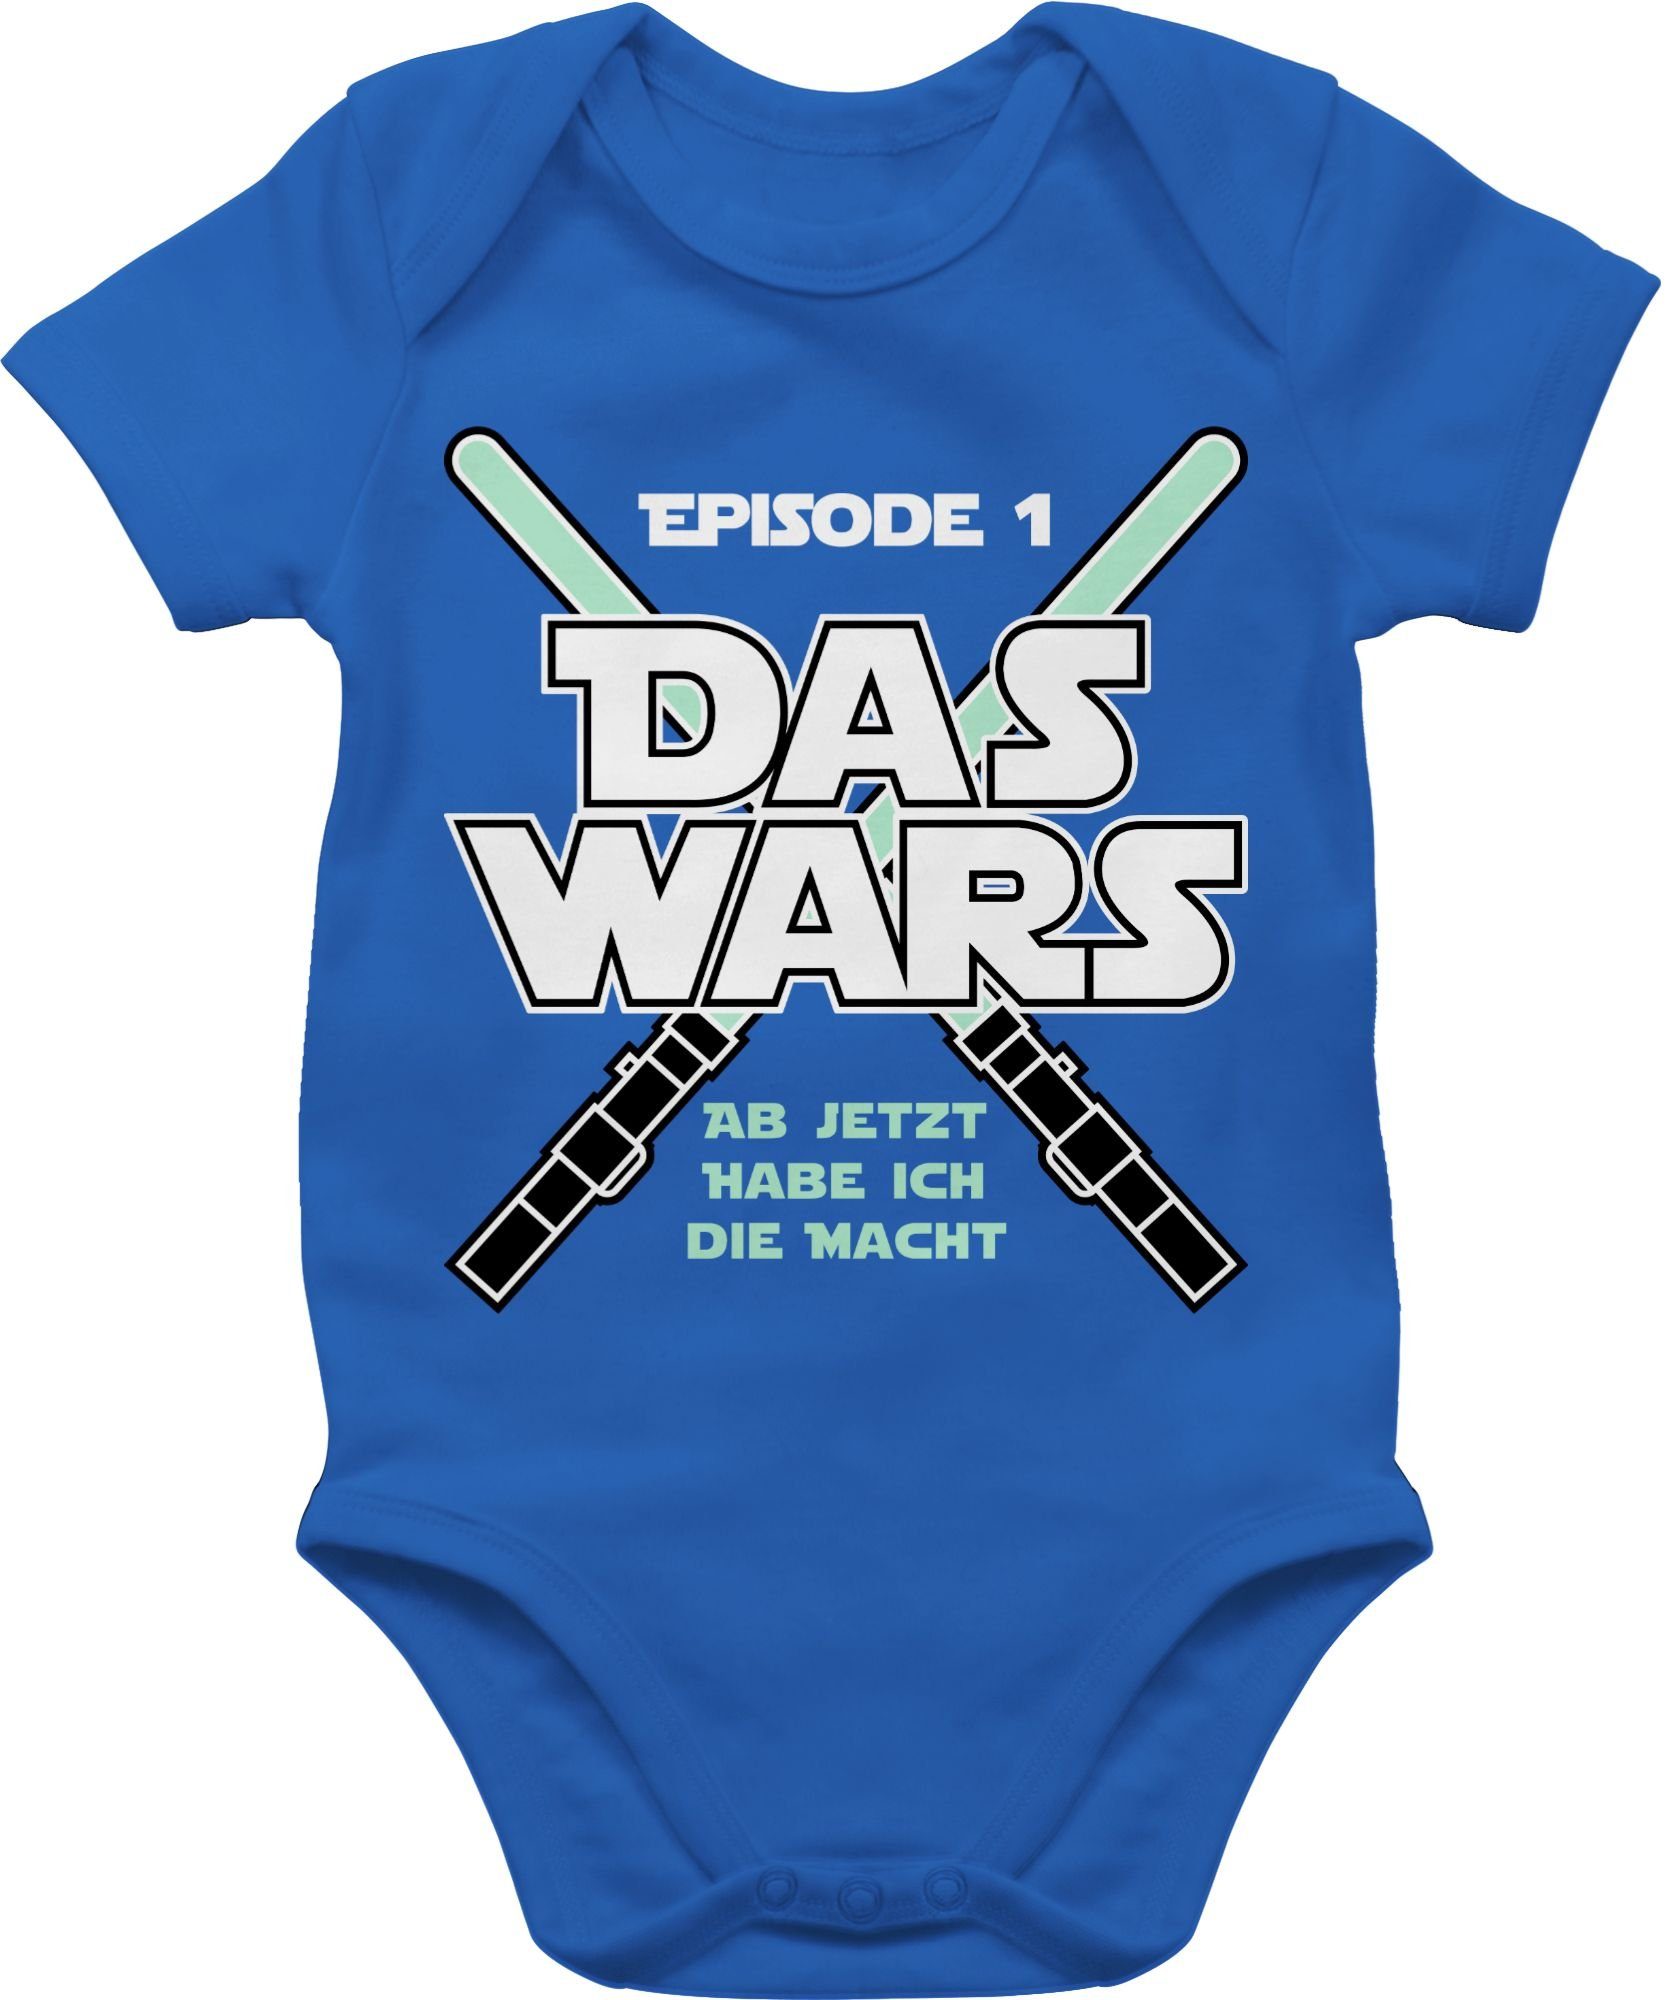 Baby T-Shirt kurzarm Babyshirt Das Wars ab jetzt hab ich die Macht Episode 1 